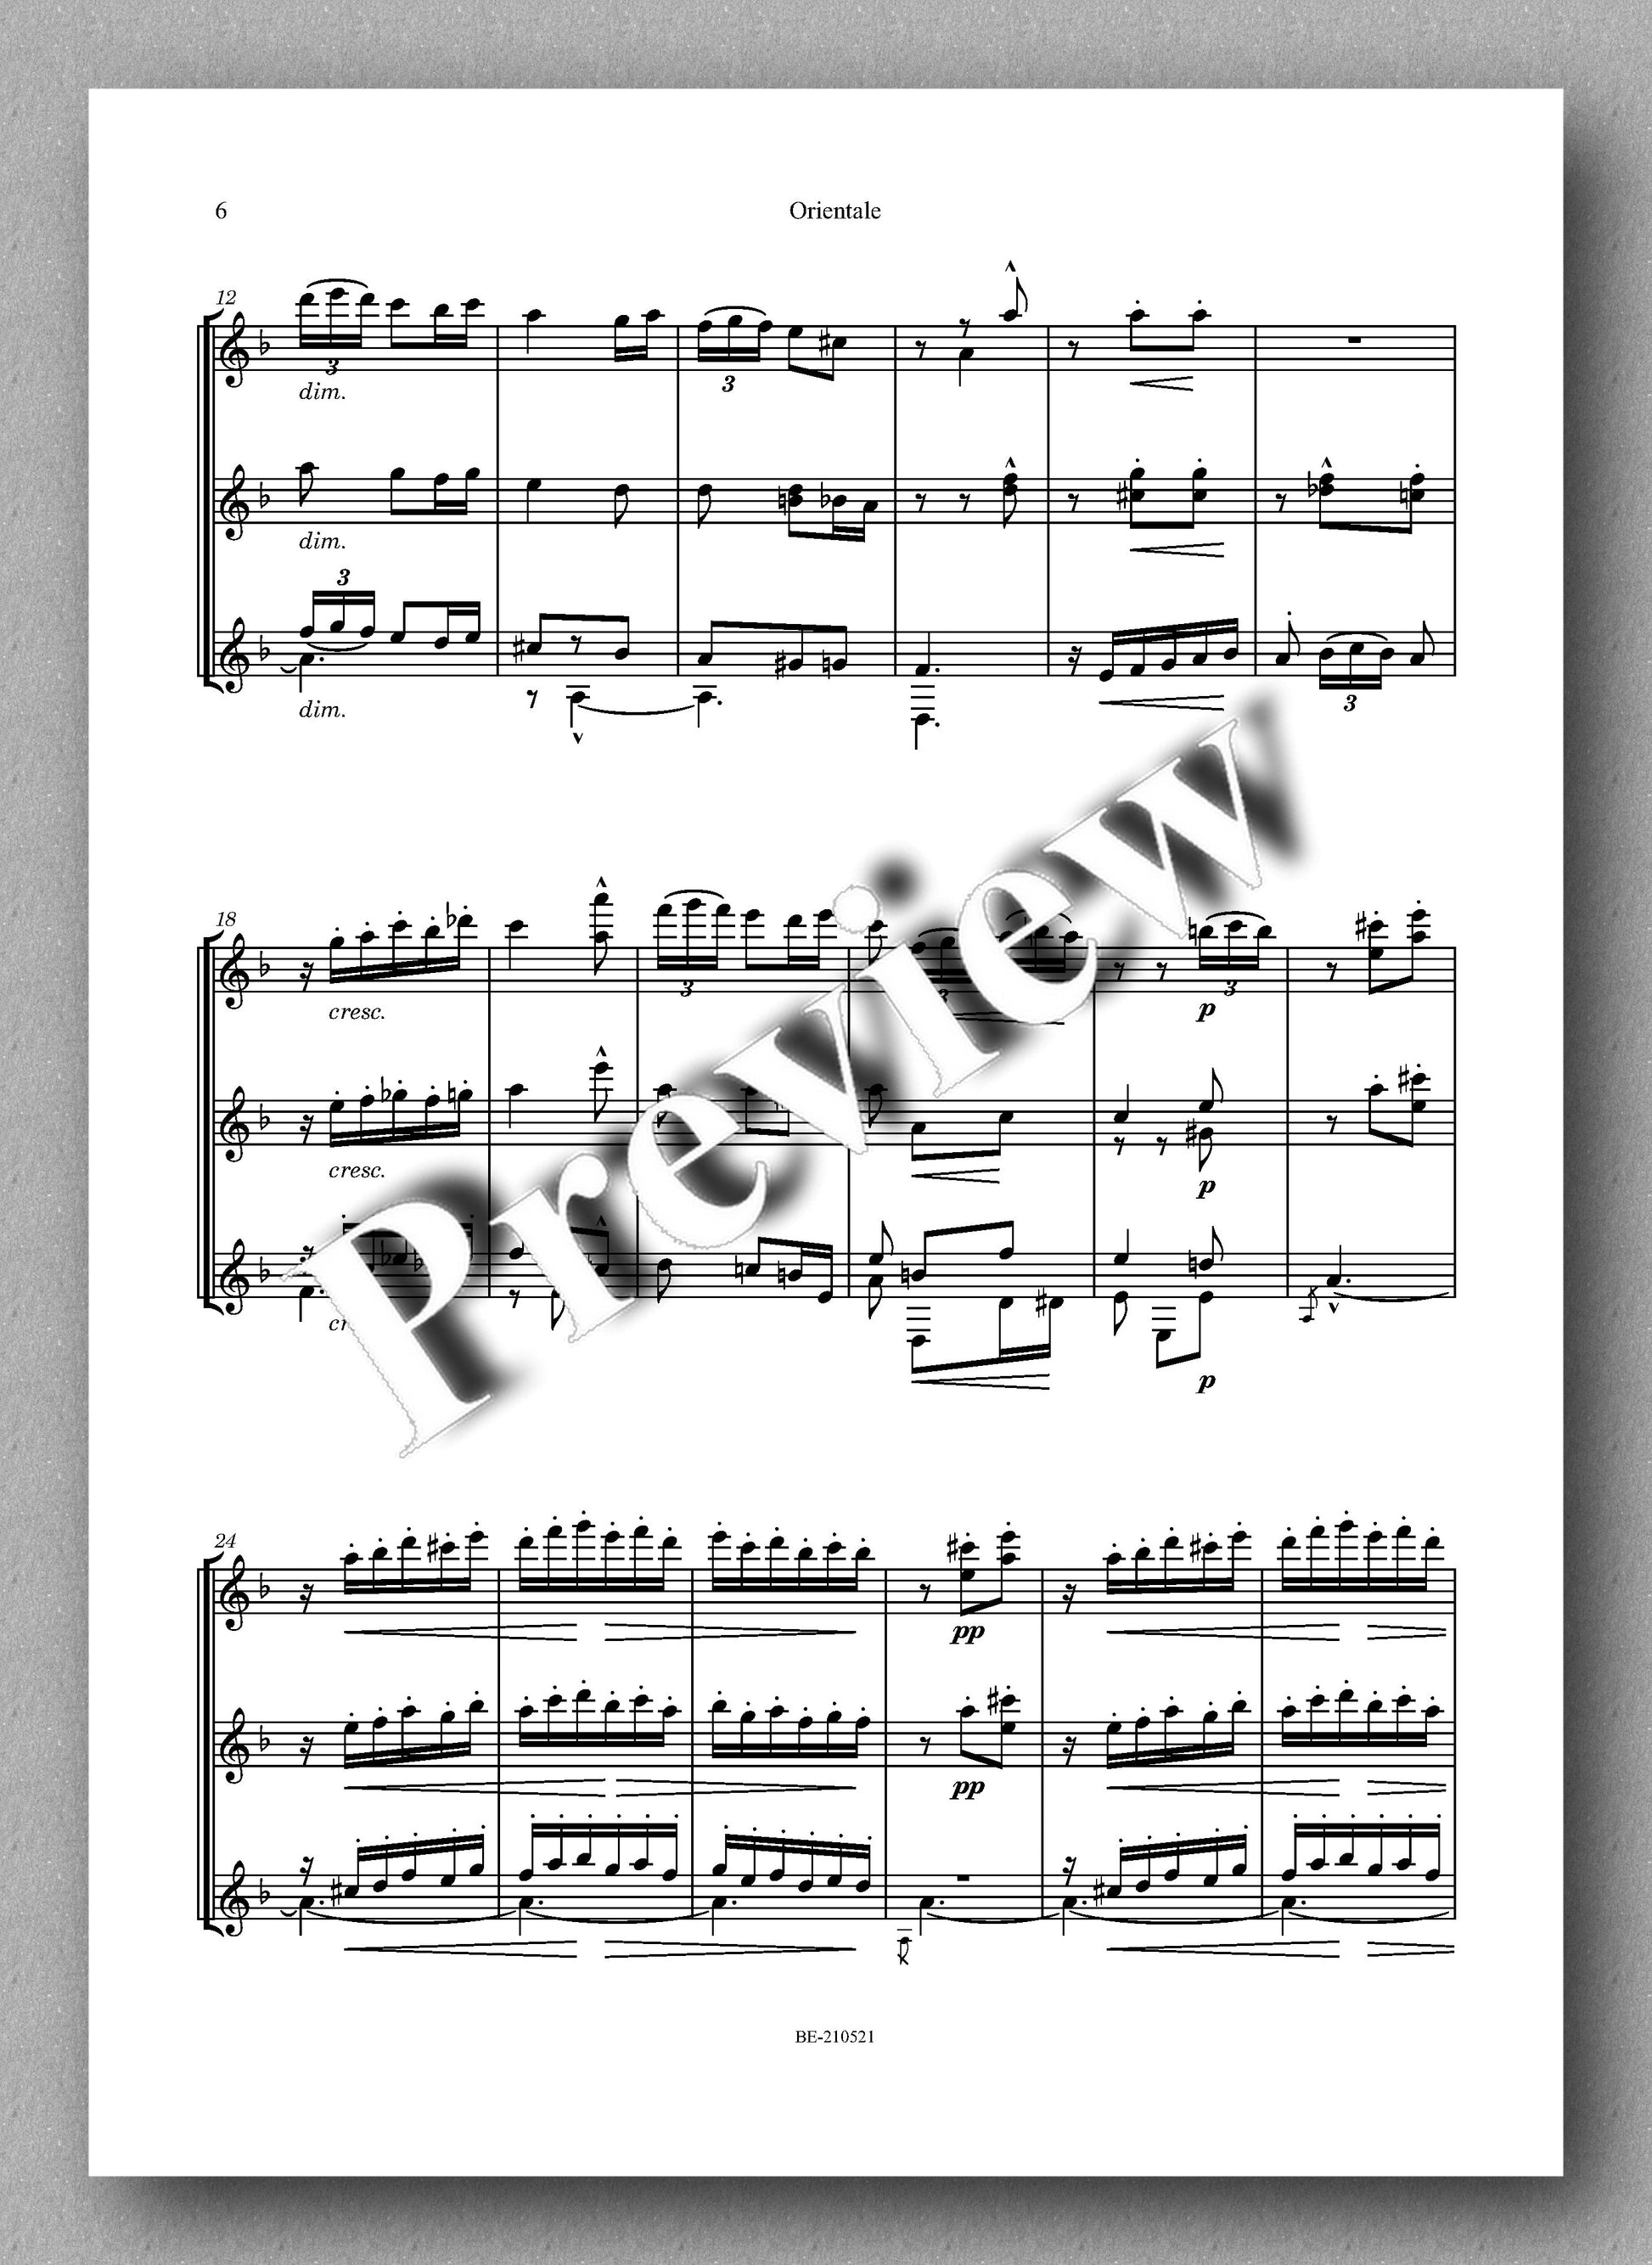 Albéniz-Burley, Orientale - music score 2